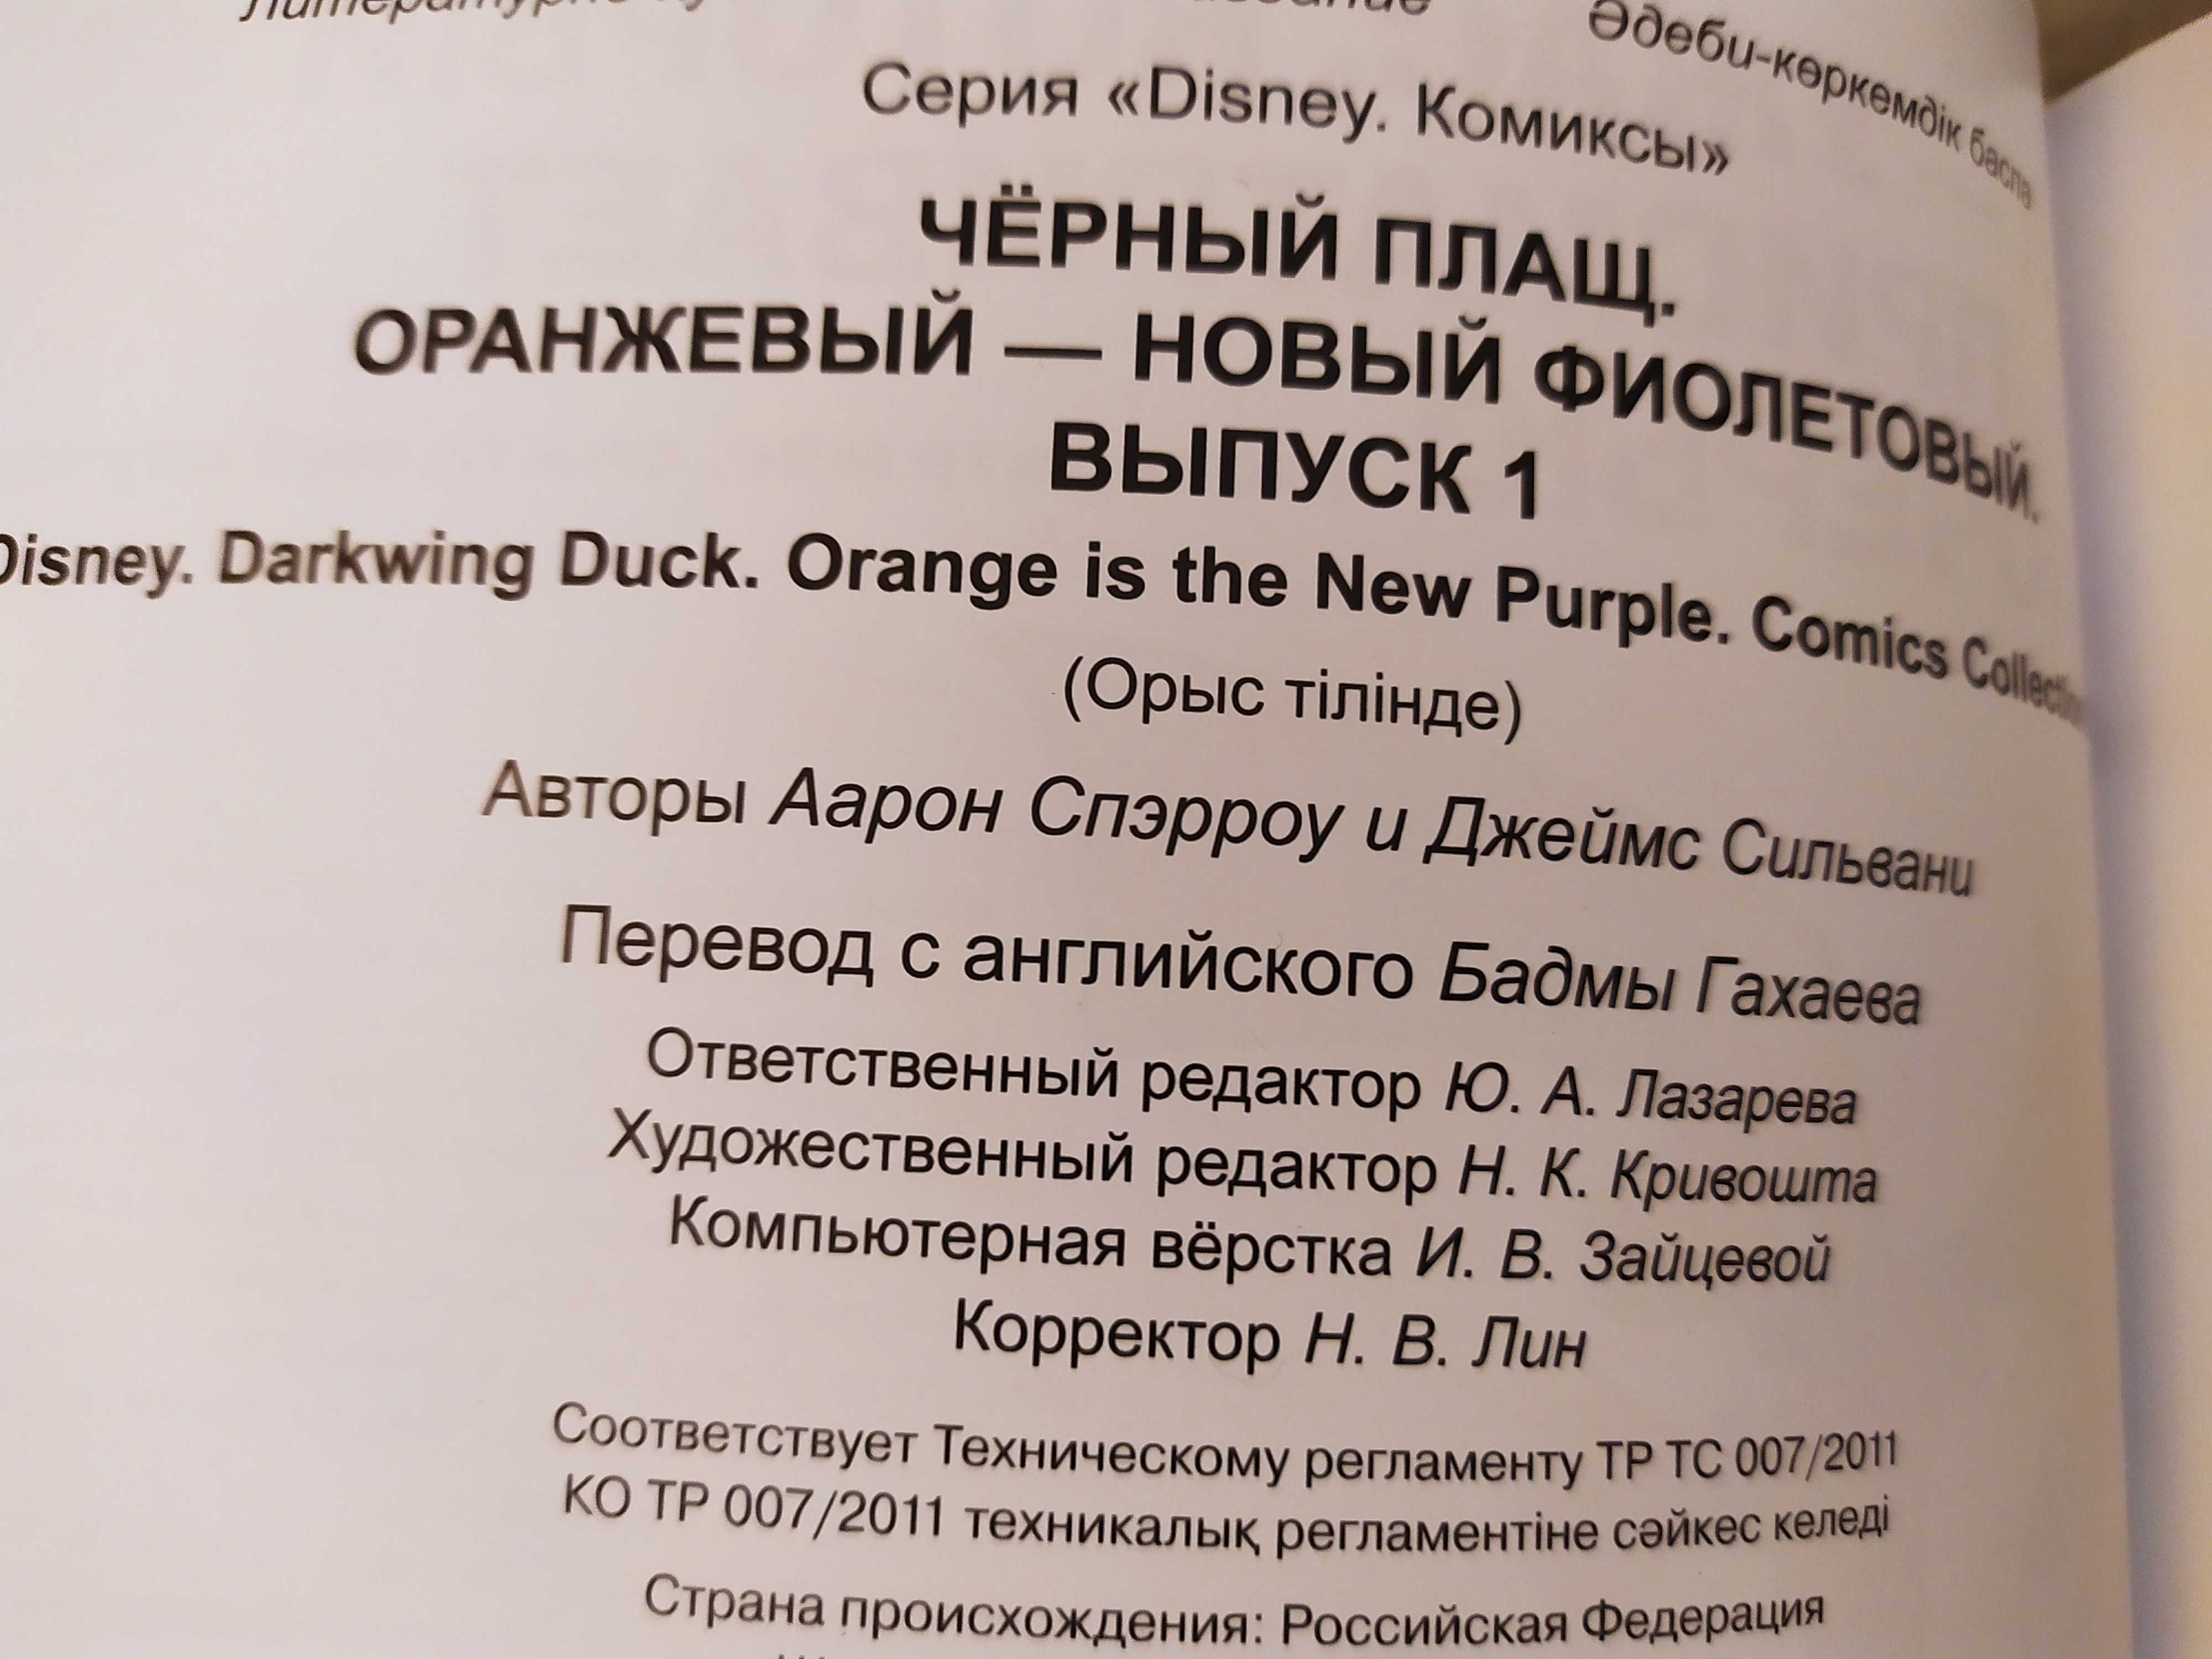 "Чёрный Плащ. Оранжевый - новый фиолетовый" Комикс Disney. Выпуск 1